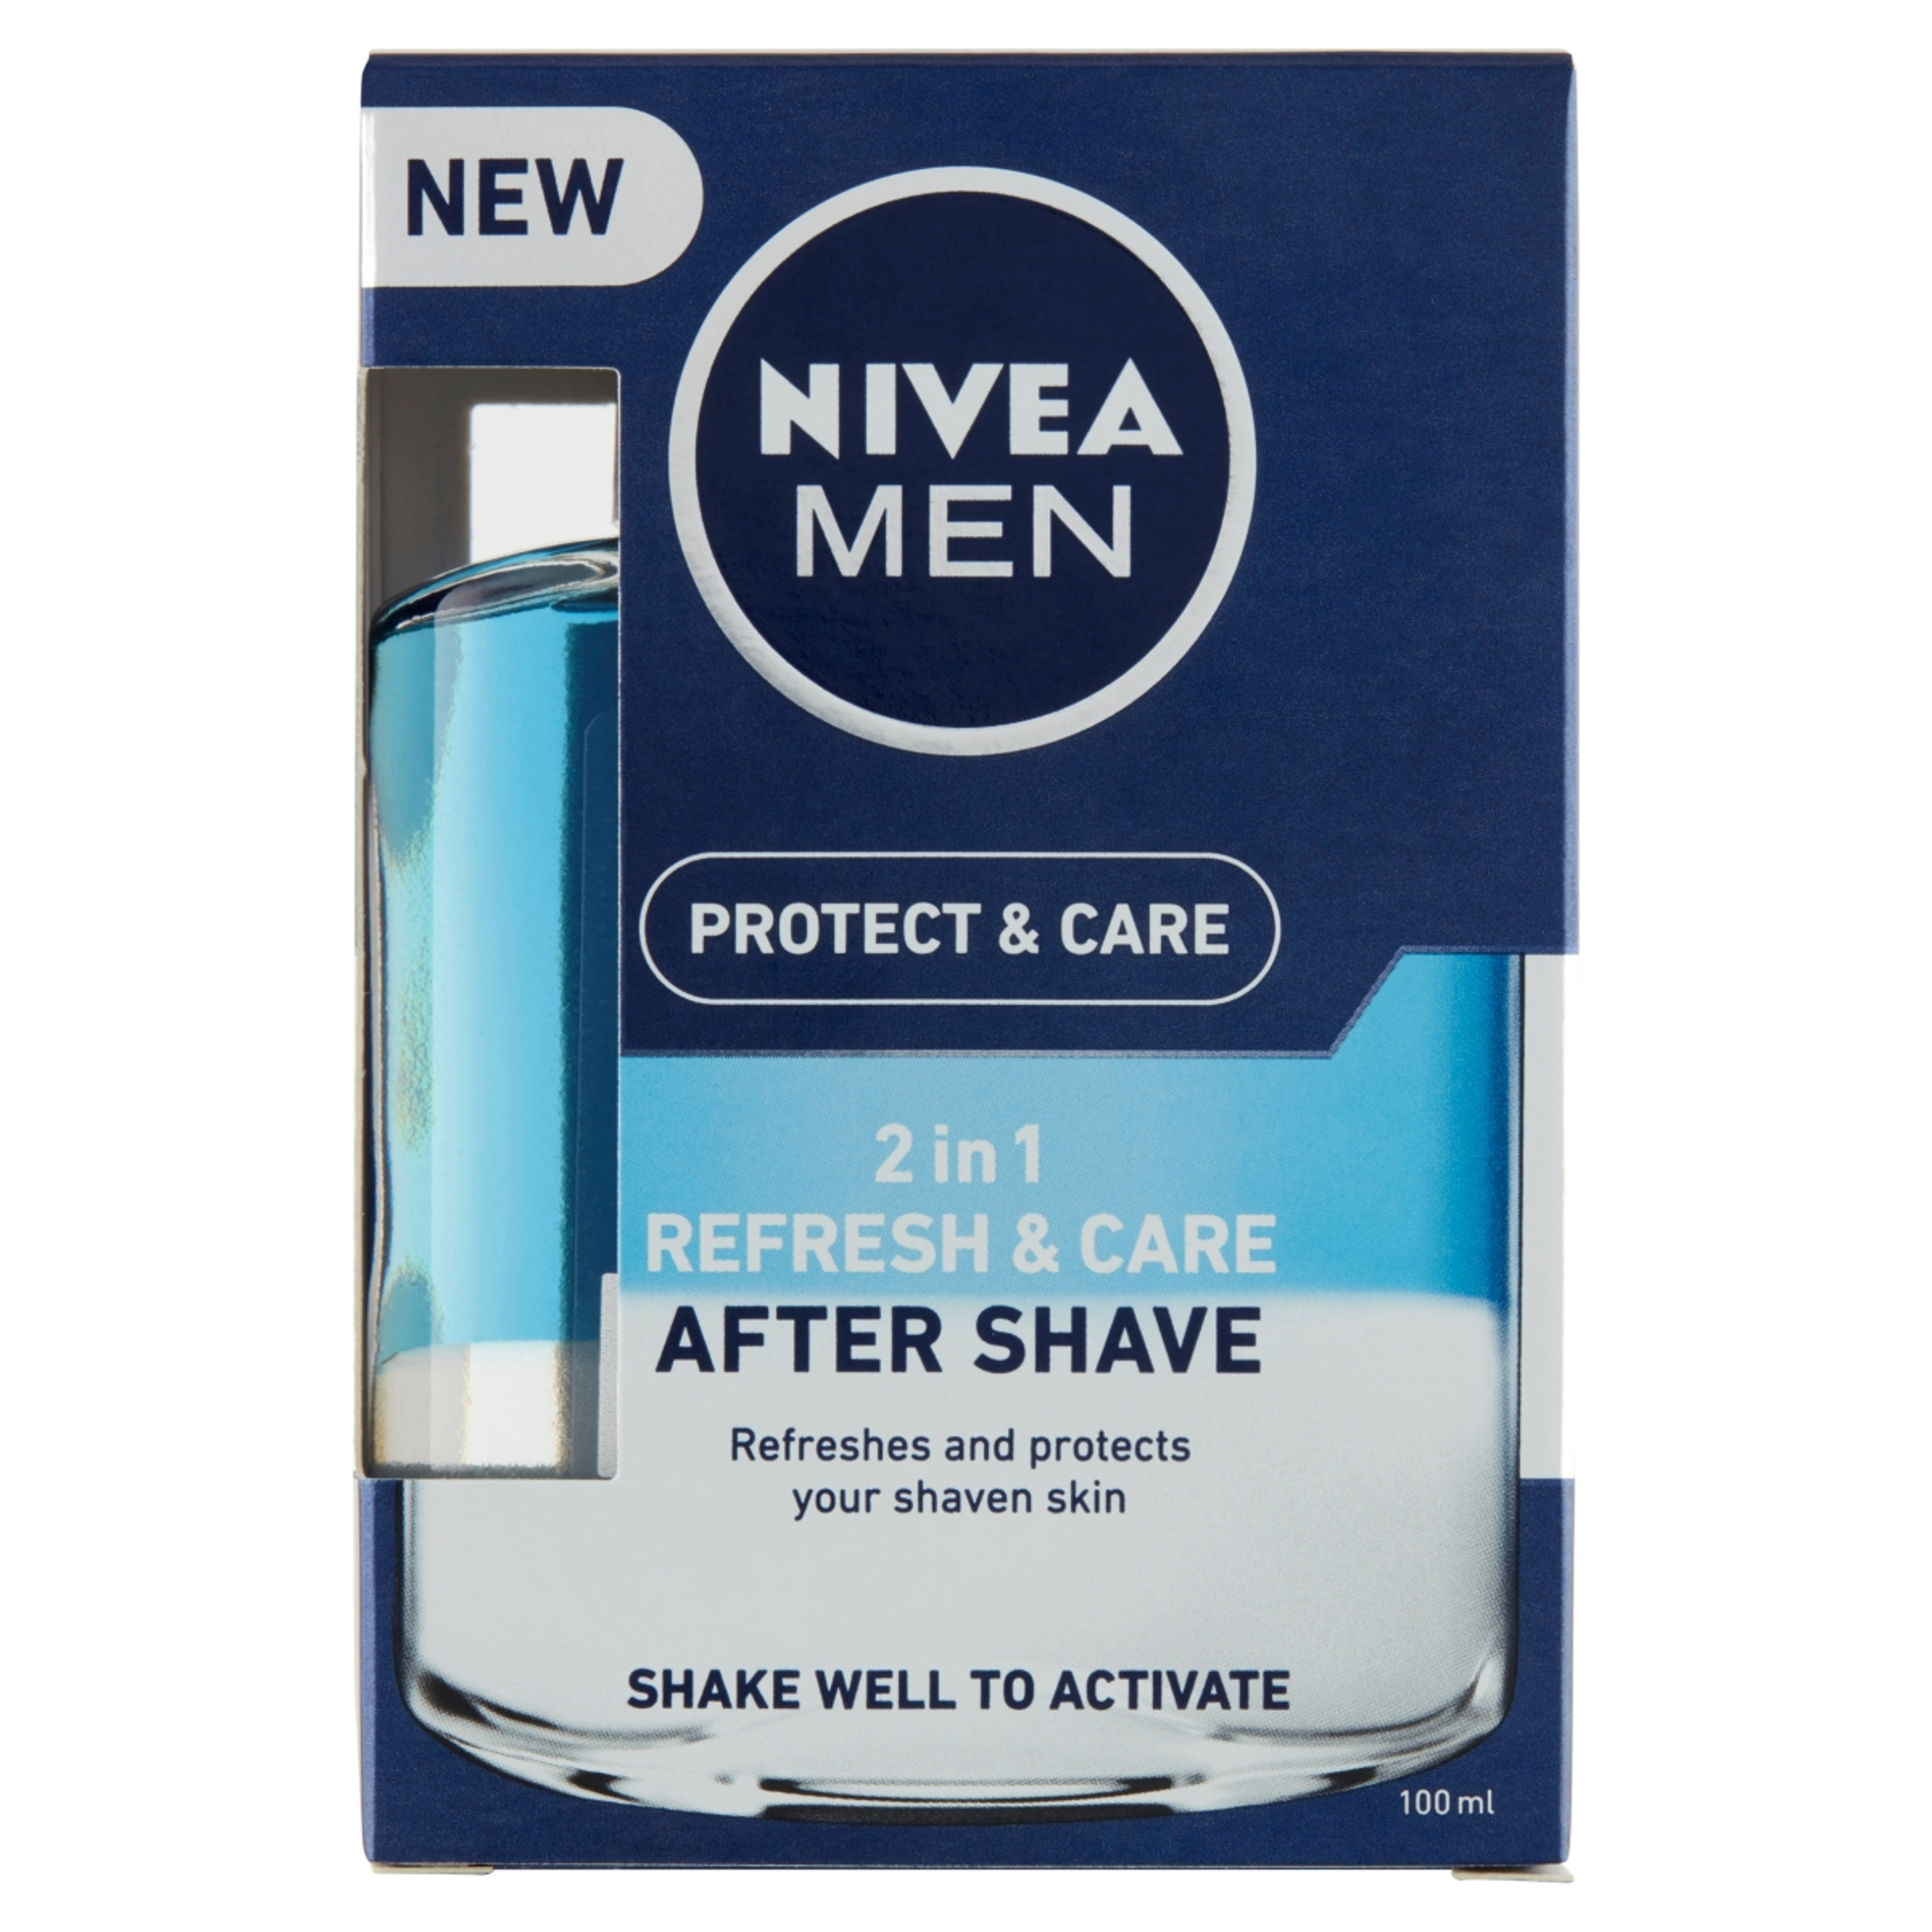 NIVEA MEN Protect & Care 2 in 1 Frissítő és Ápoló After Shave Lotion - 100 ml